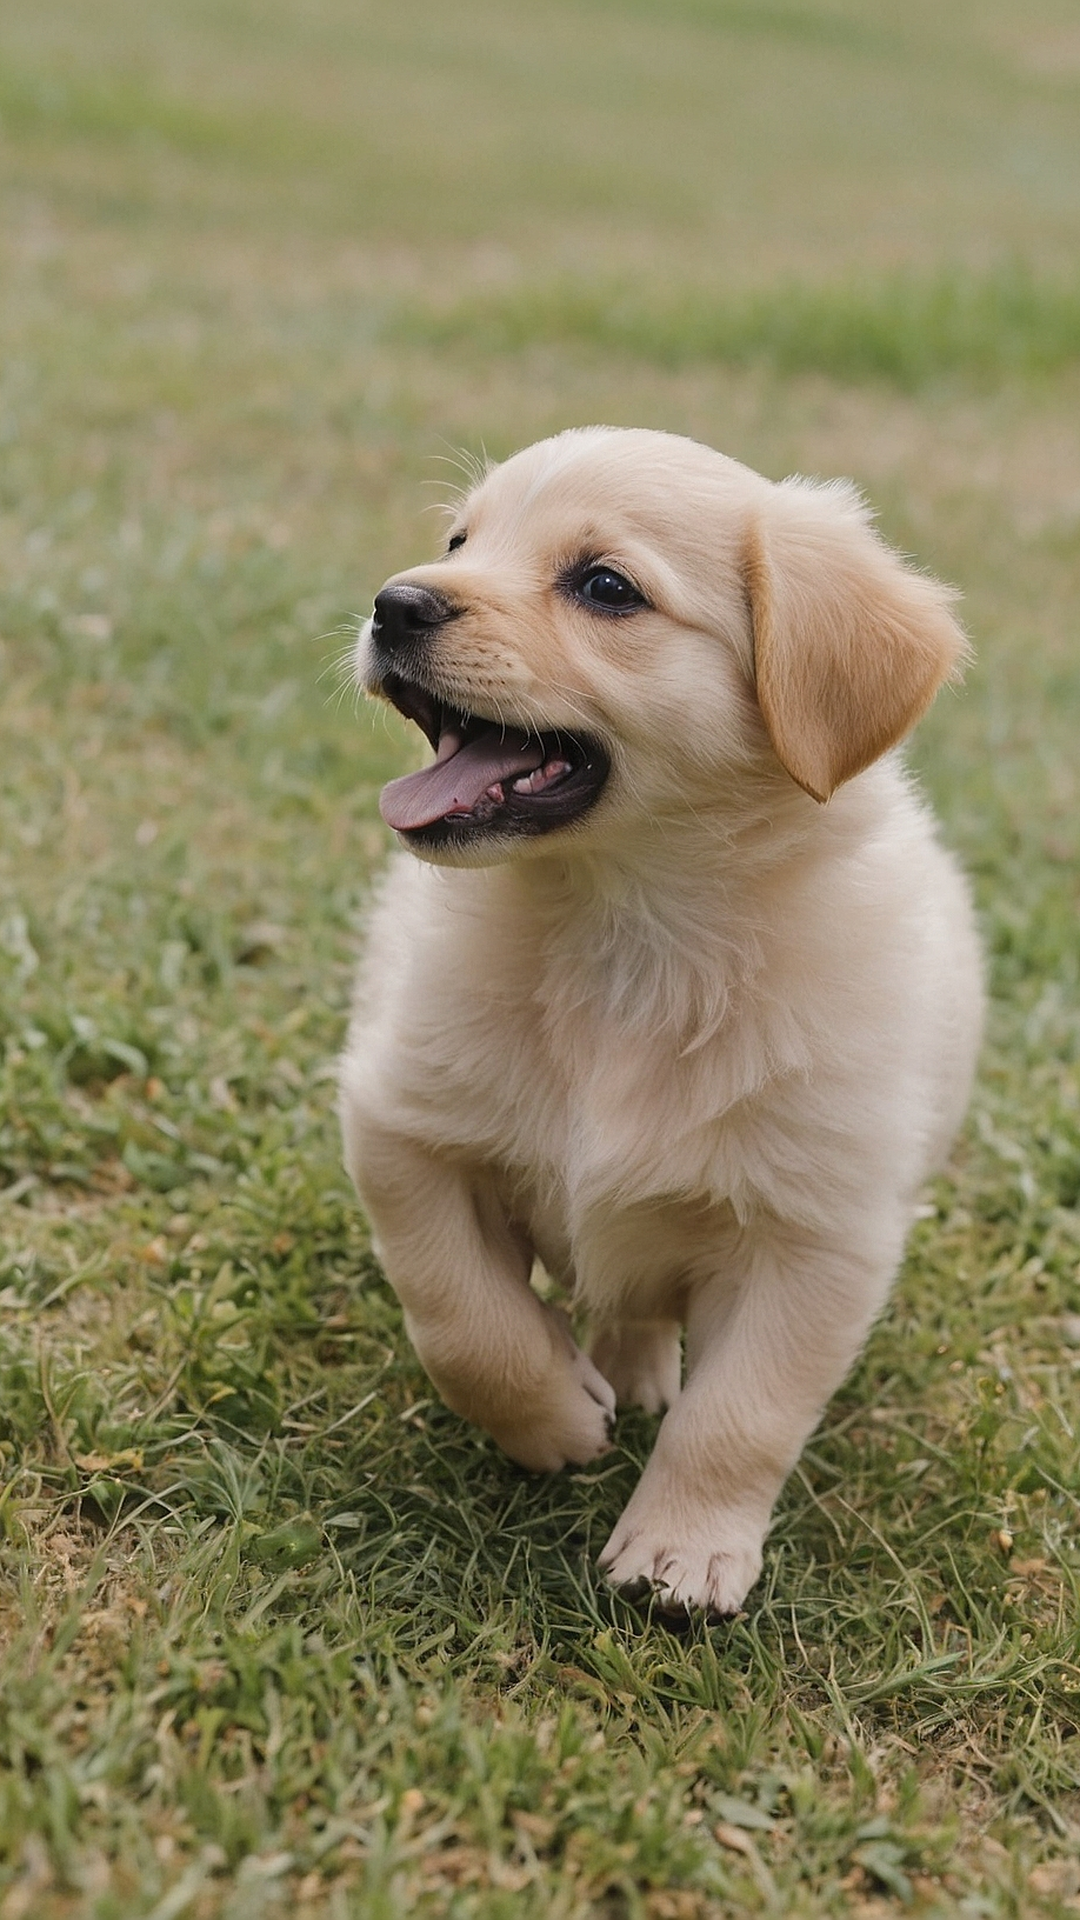 Sweet Pup Portraits: Cuteness Overload!